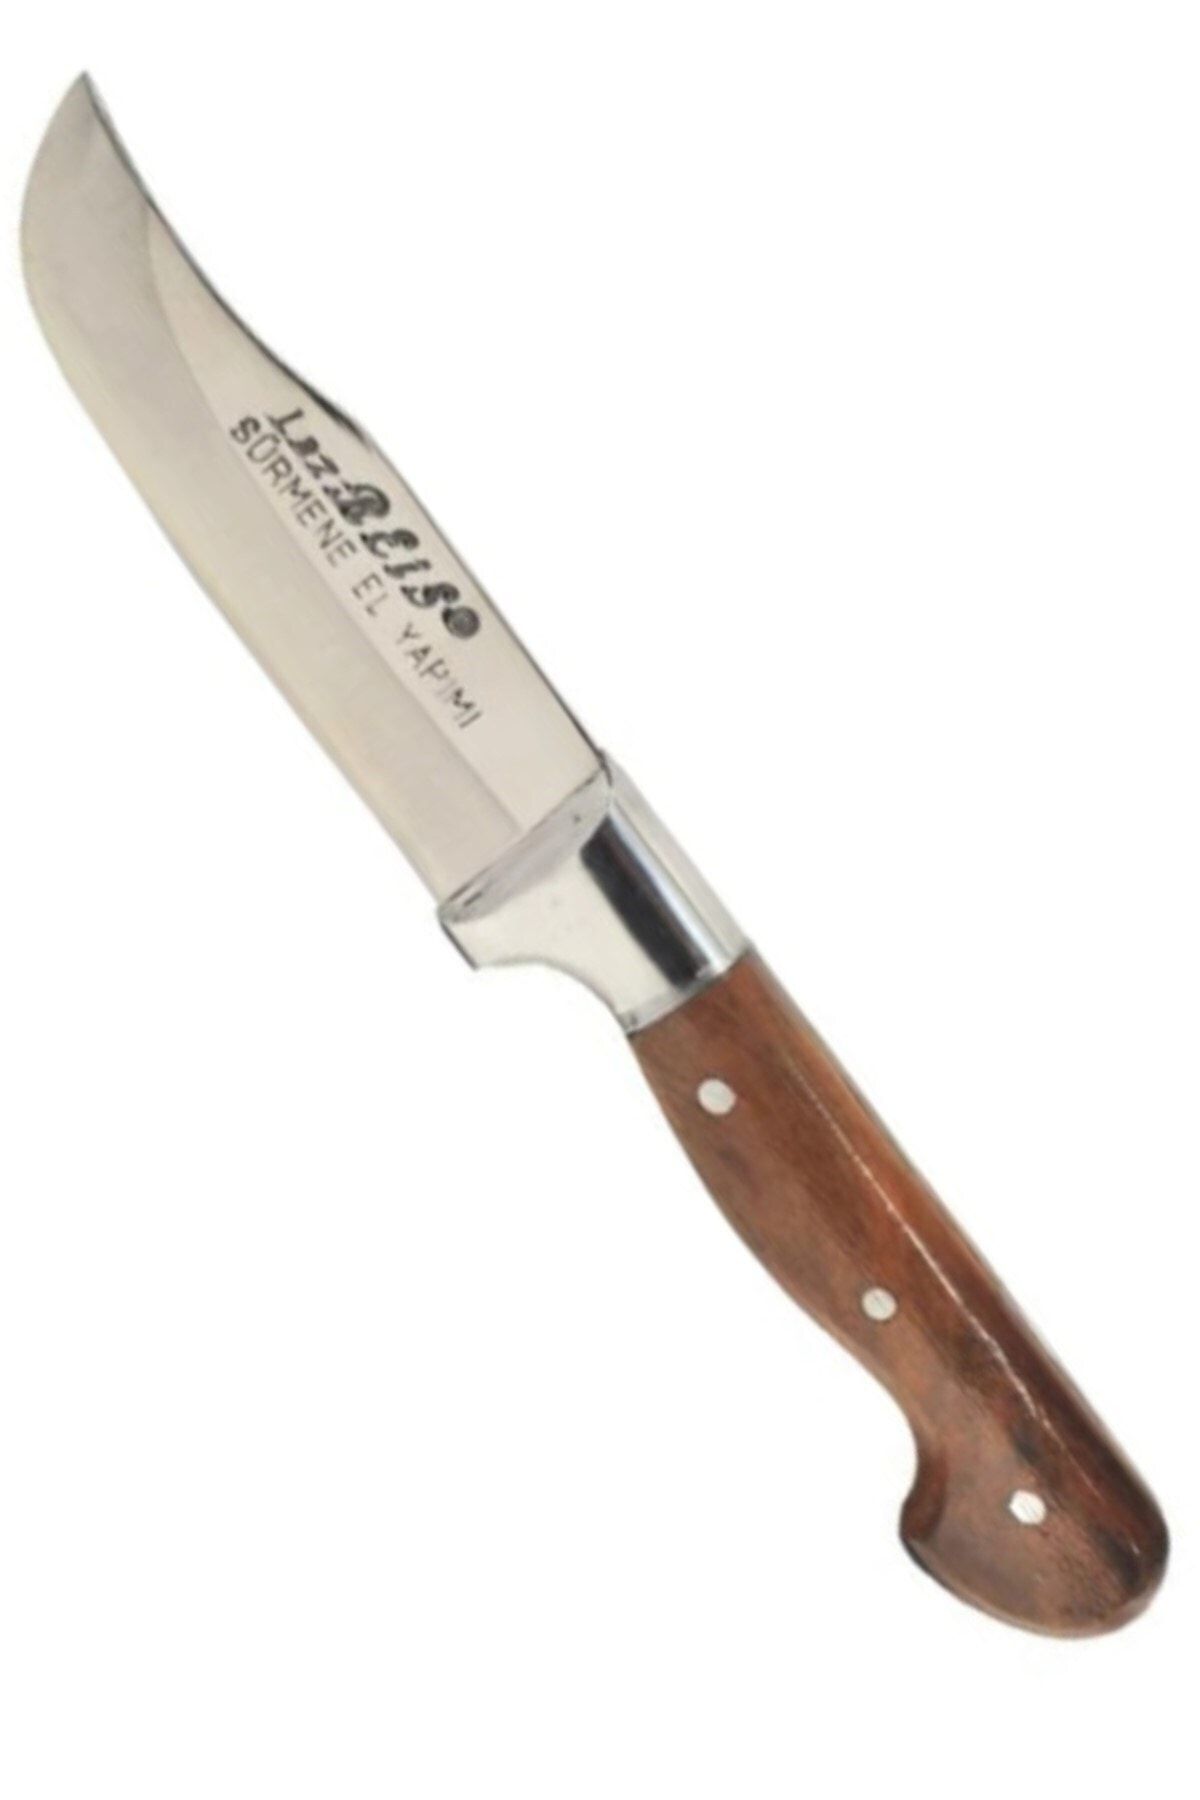 RoseRoi Mutfak Bıçağı Lazreis Sürmene Bıçak